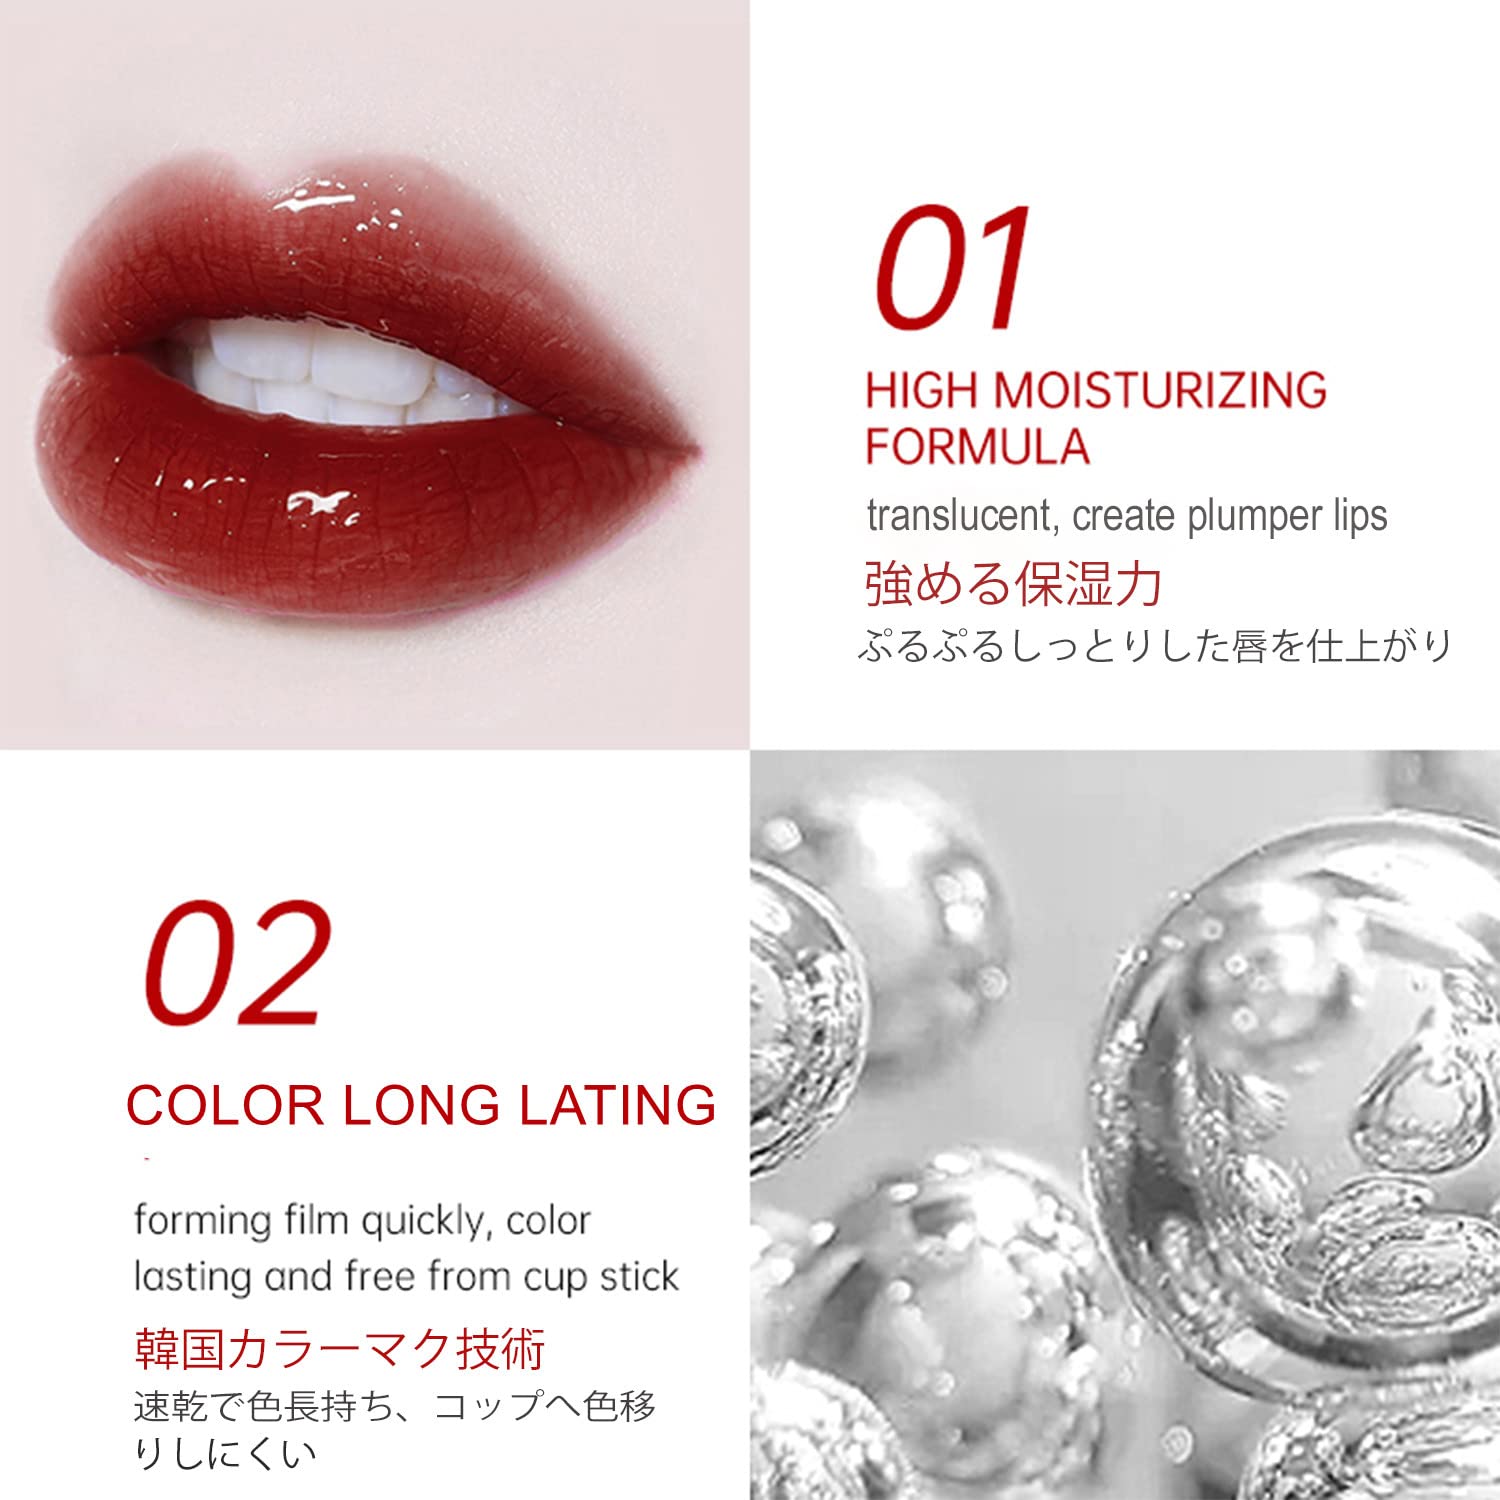 Colorkey Airy Lip Mirror - Colorkey | Kiokii and...